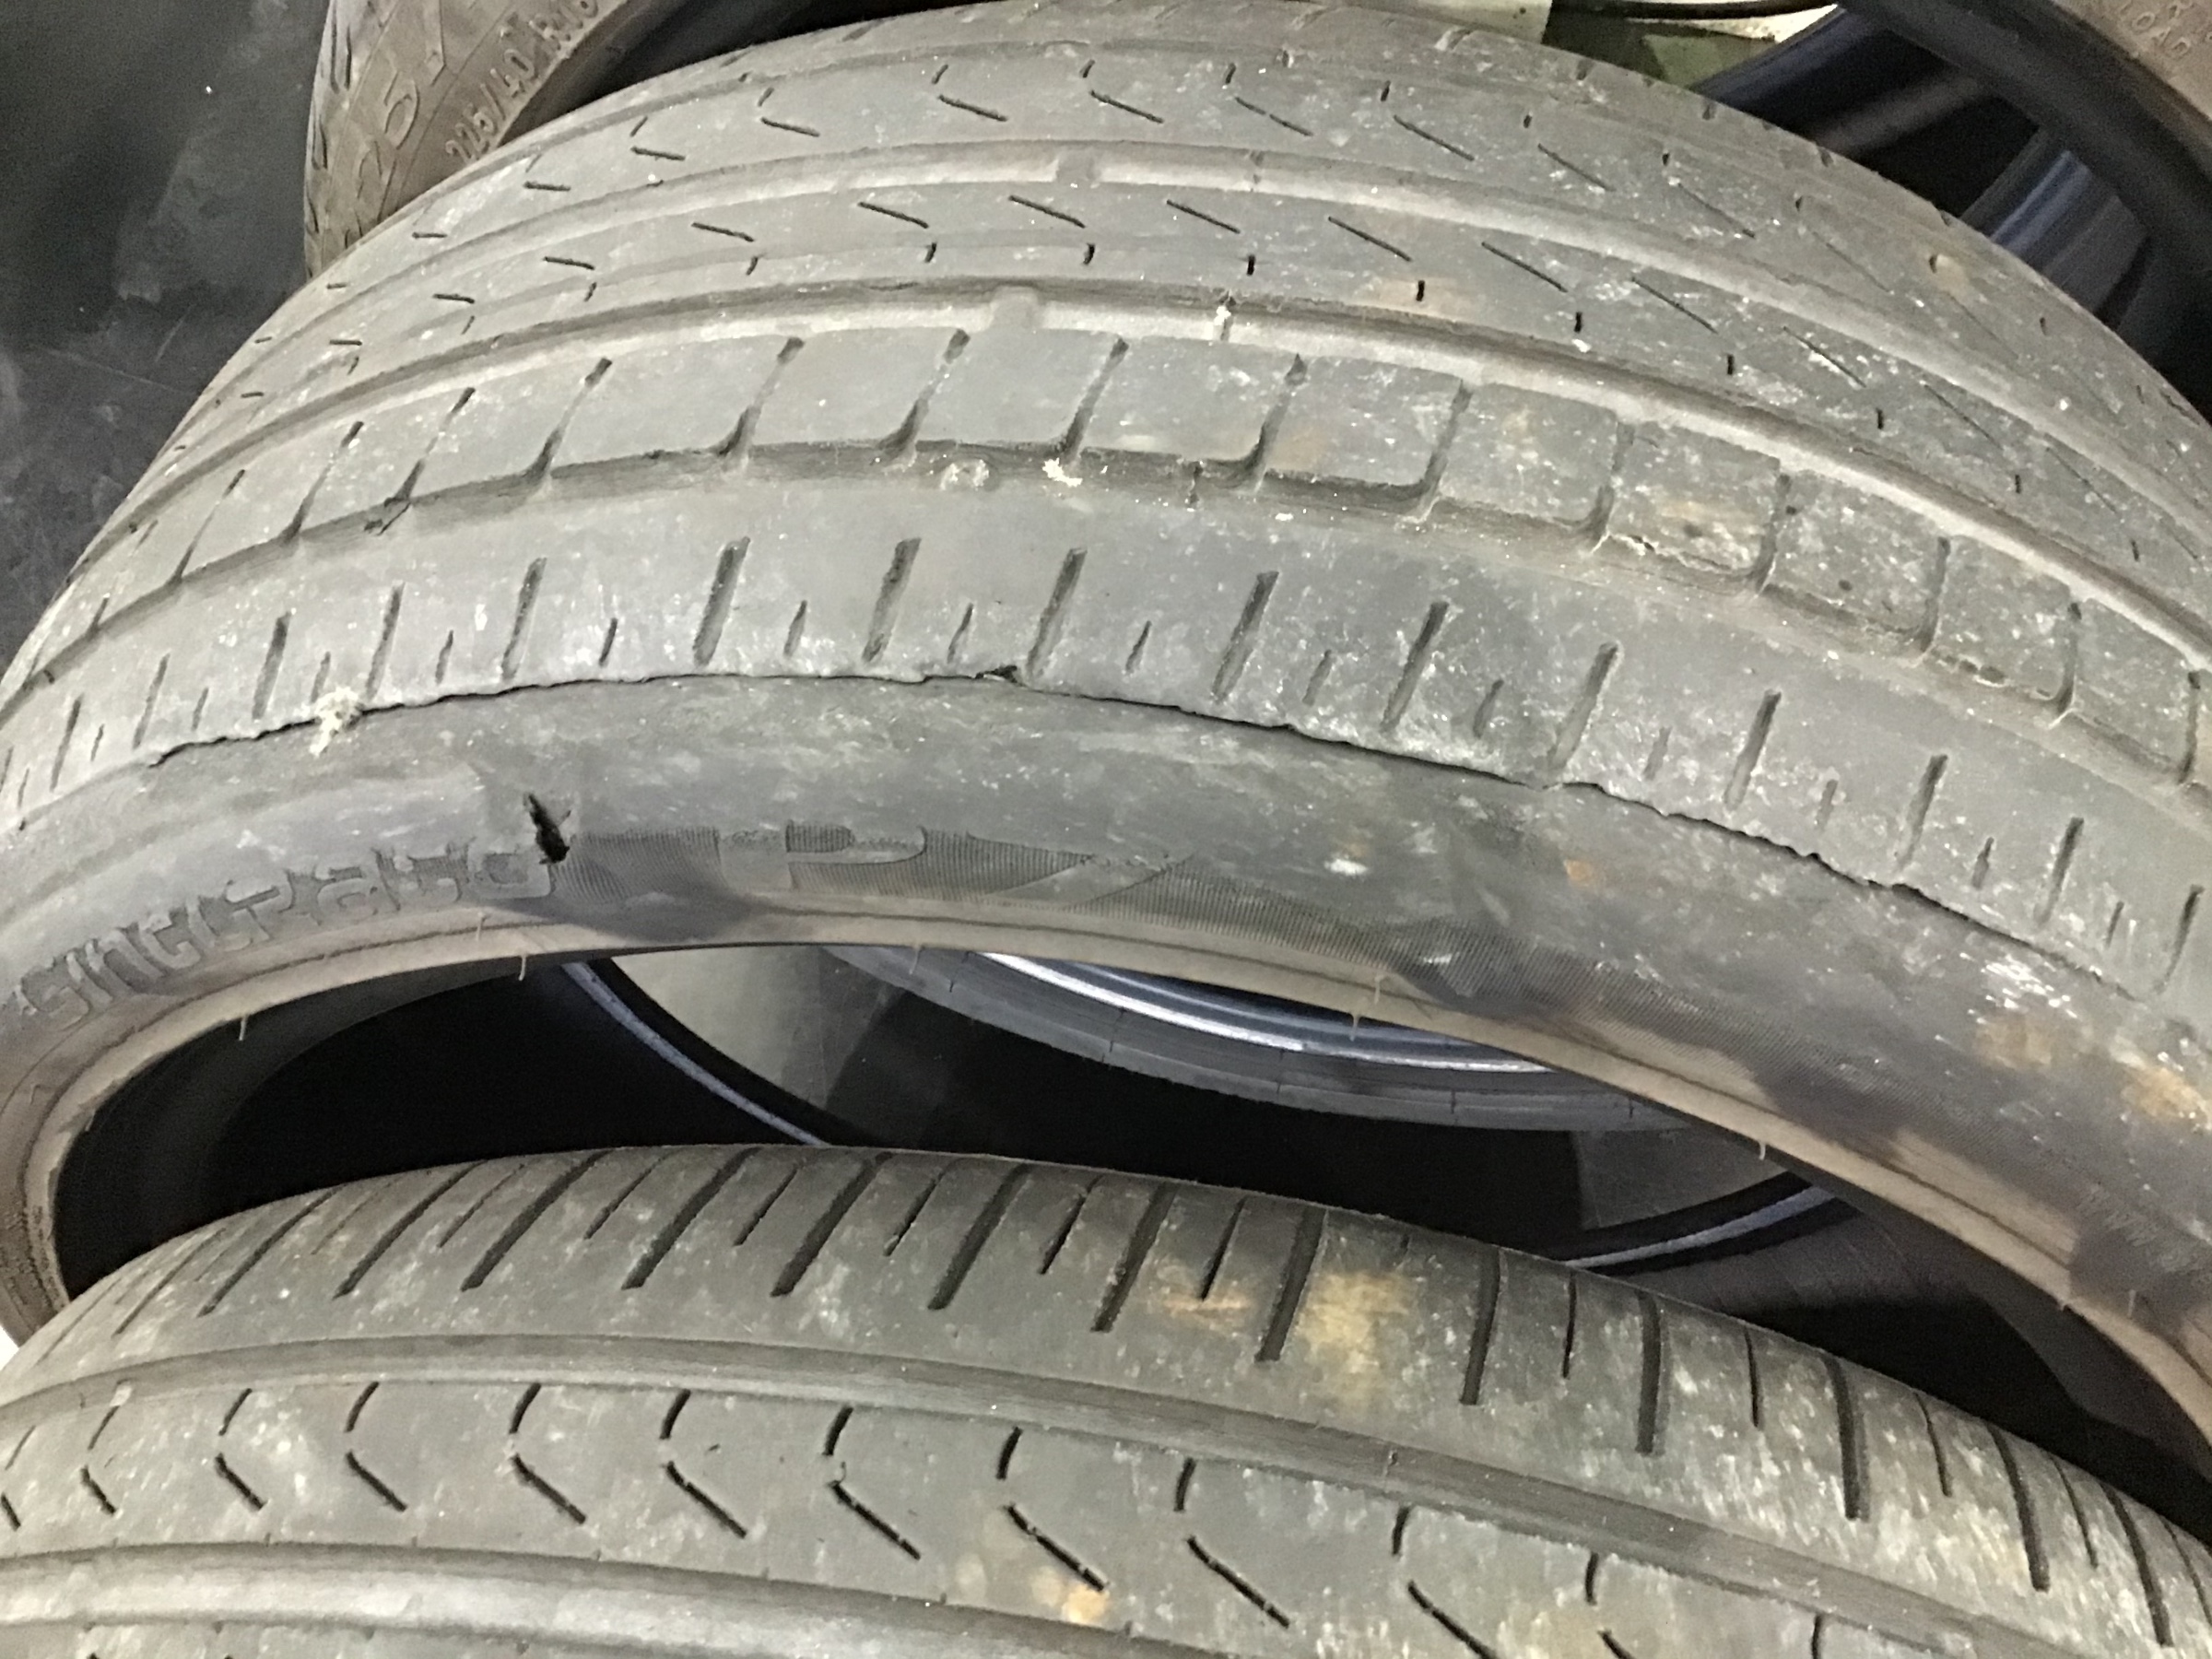 アライメント不良から、タイヤが損傷してエアー漏れ(パンク)してしまいました。